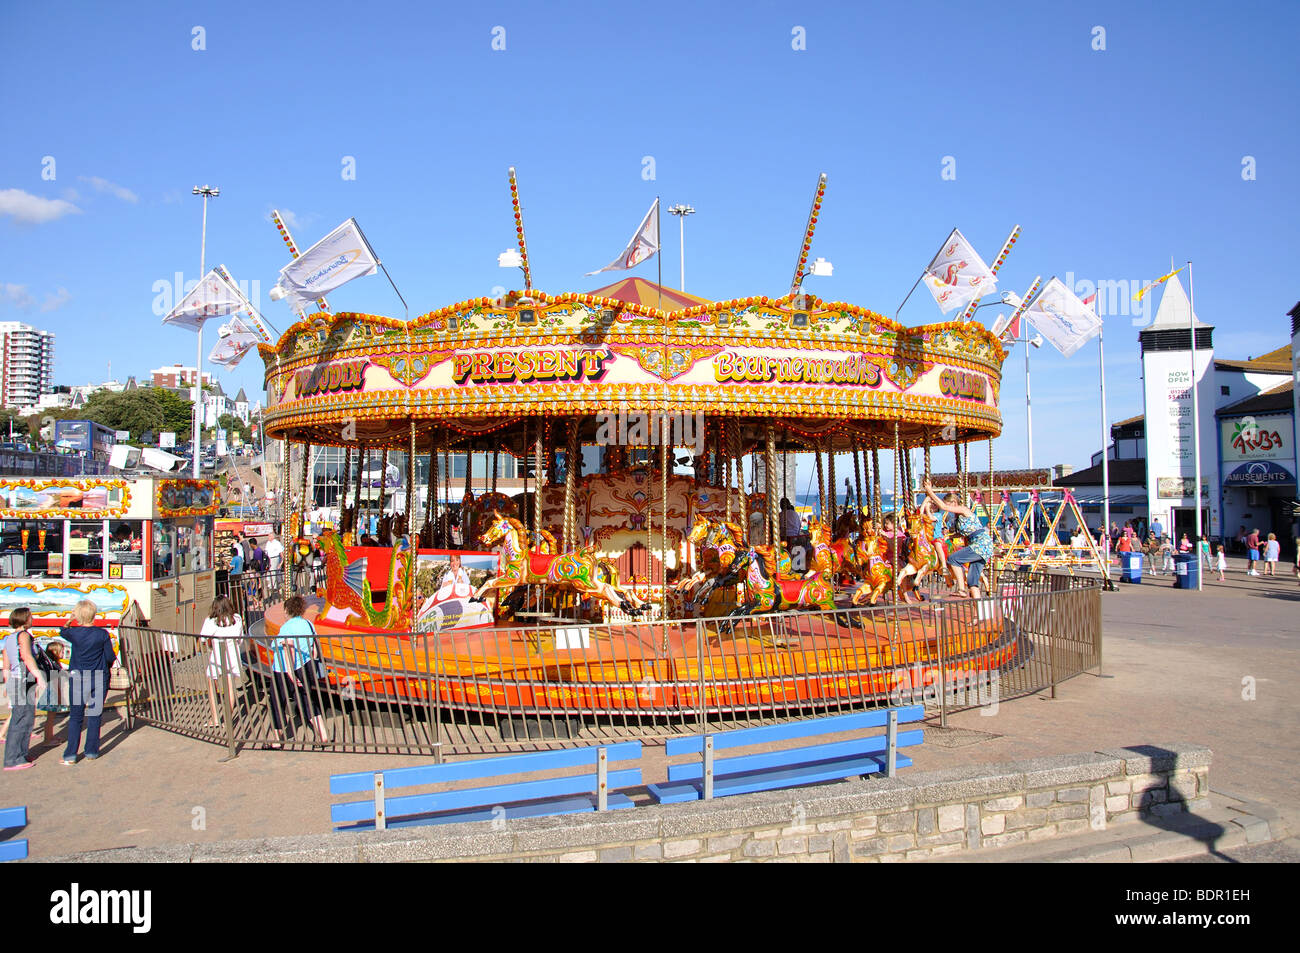 Parc en bord de carrousel, Bournemouth, Dorset, England, United Kingdom Banque D'Images